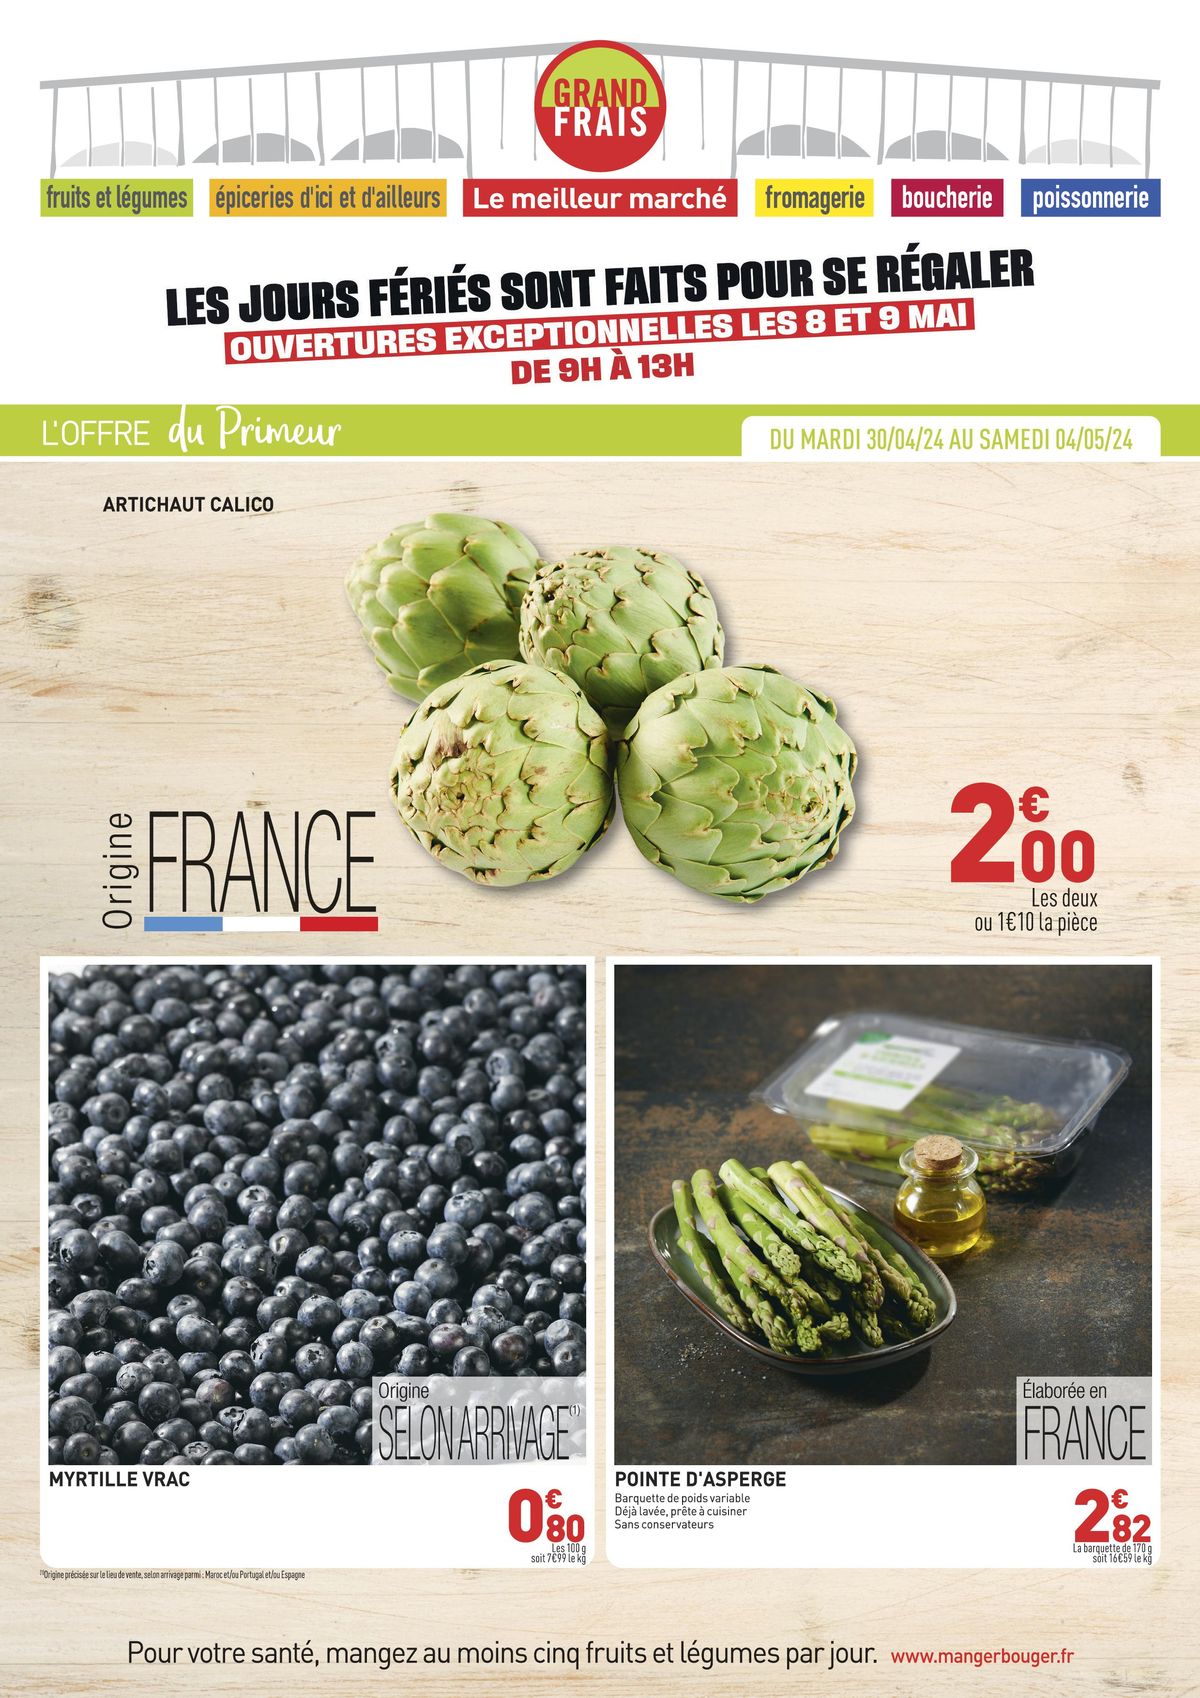 Catalogue L'OFFRE du Primeur, page 00001